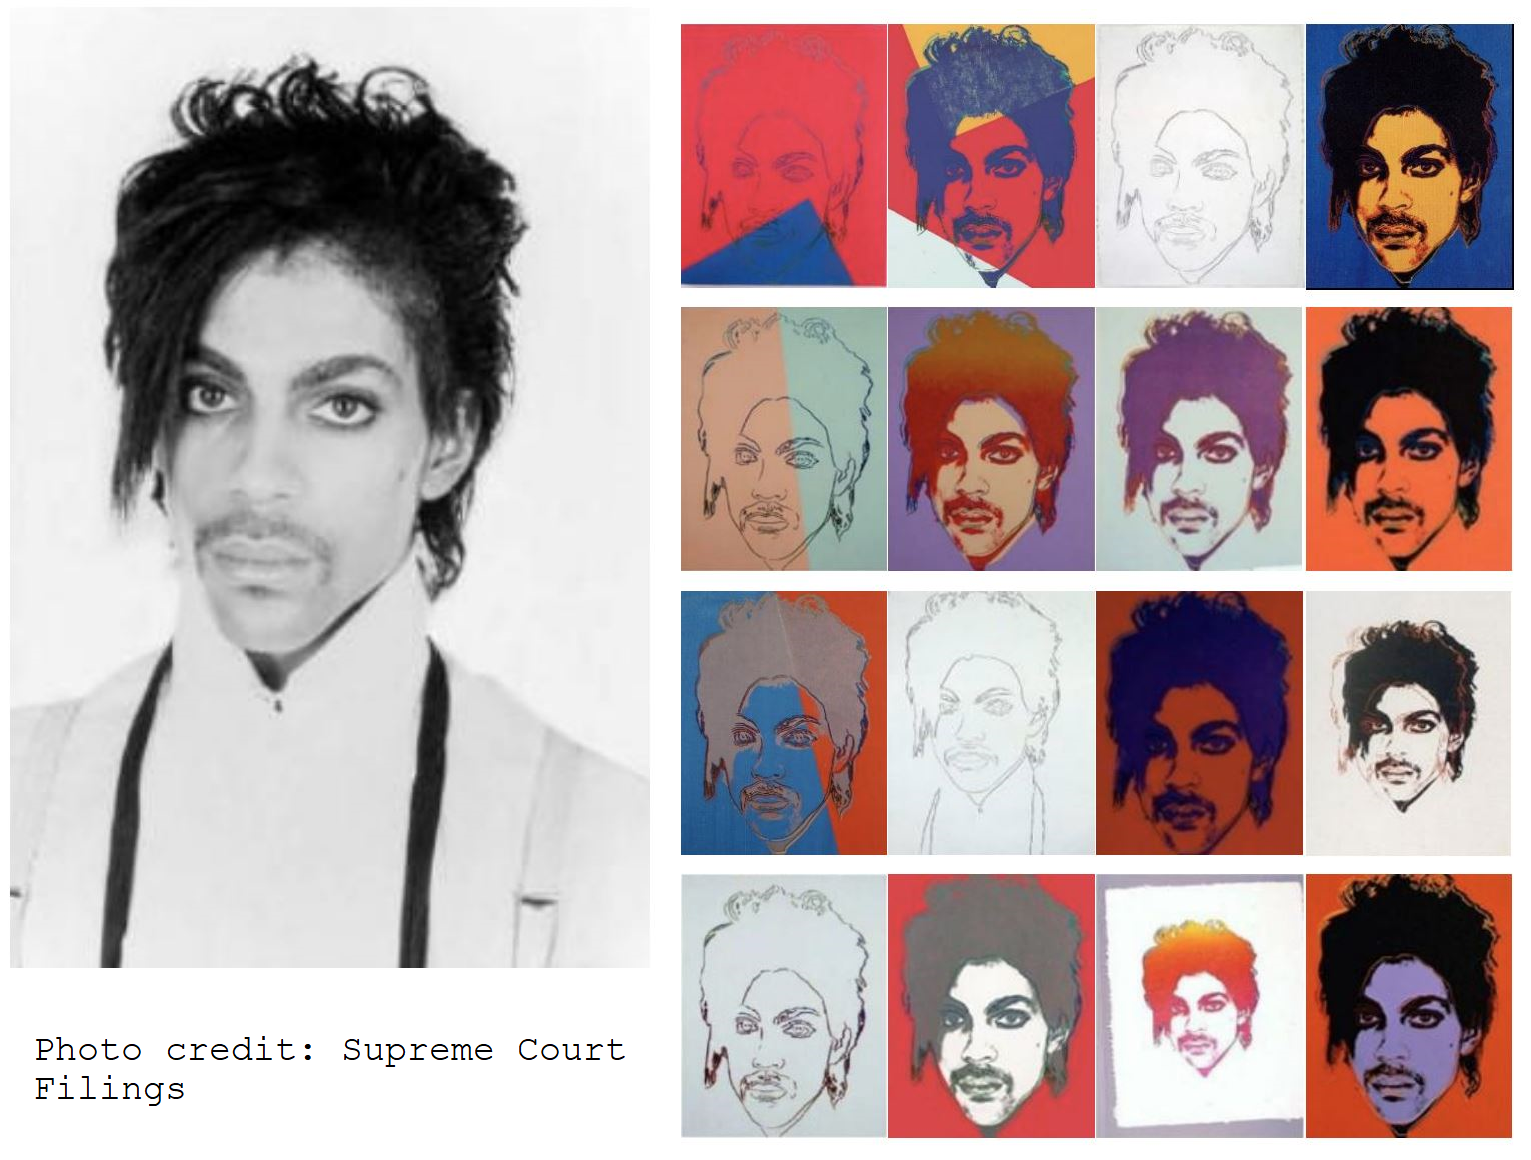 prince - Warhol SCOTUS filing